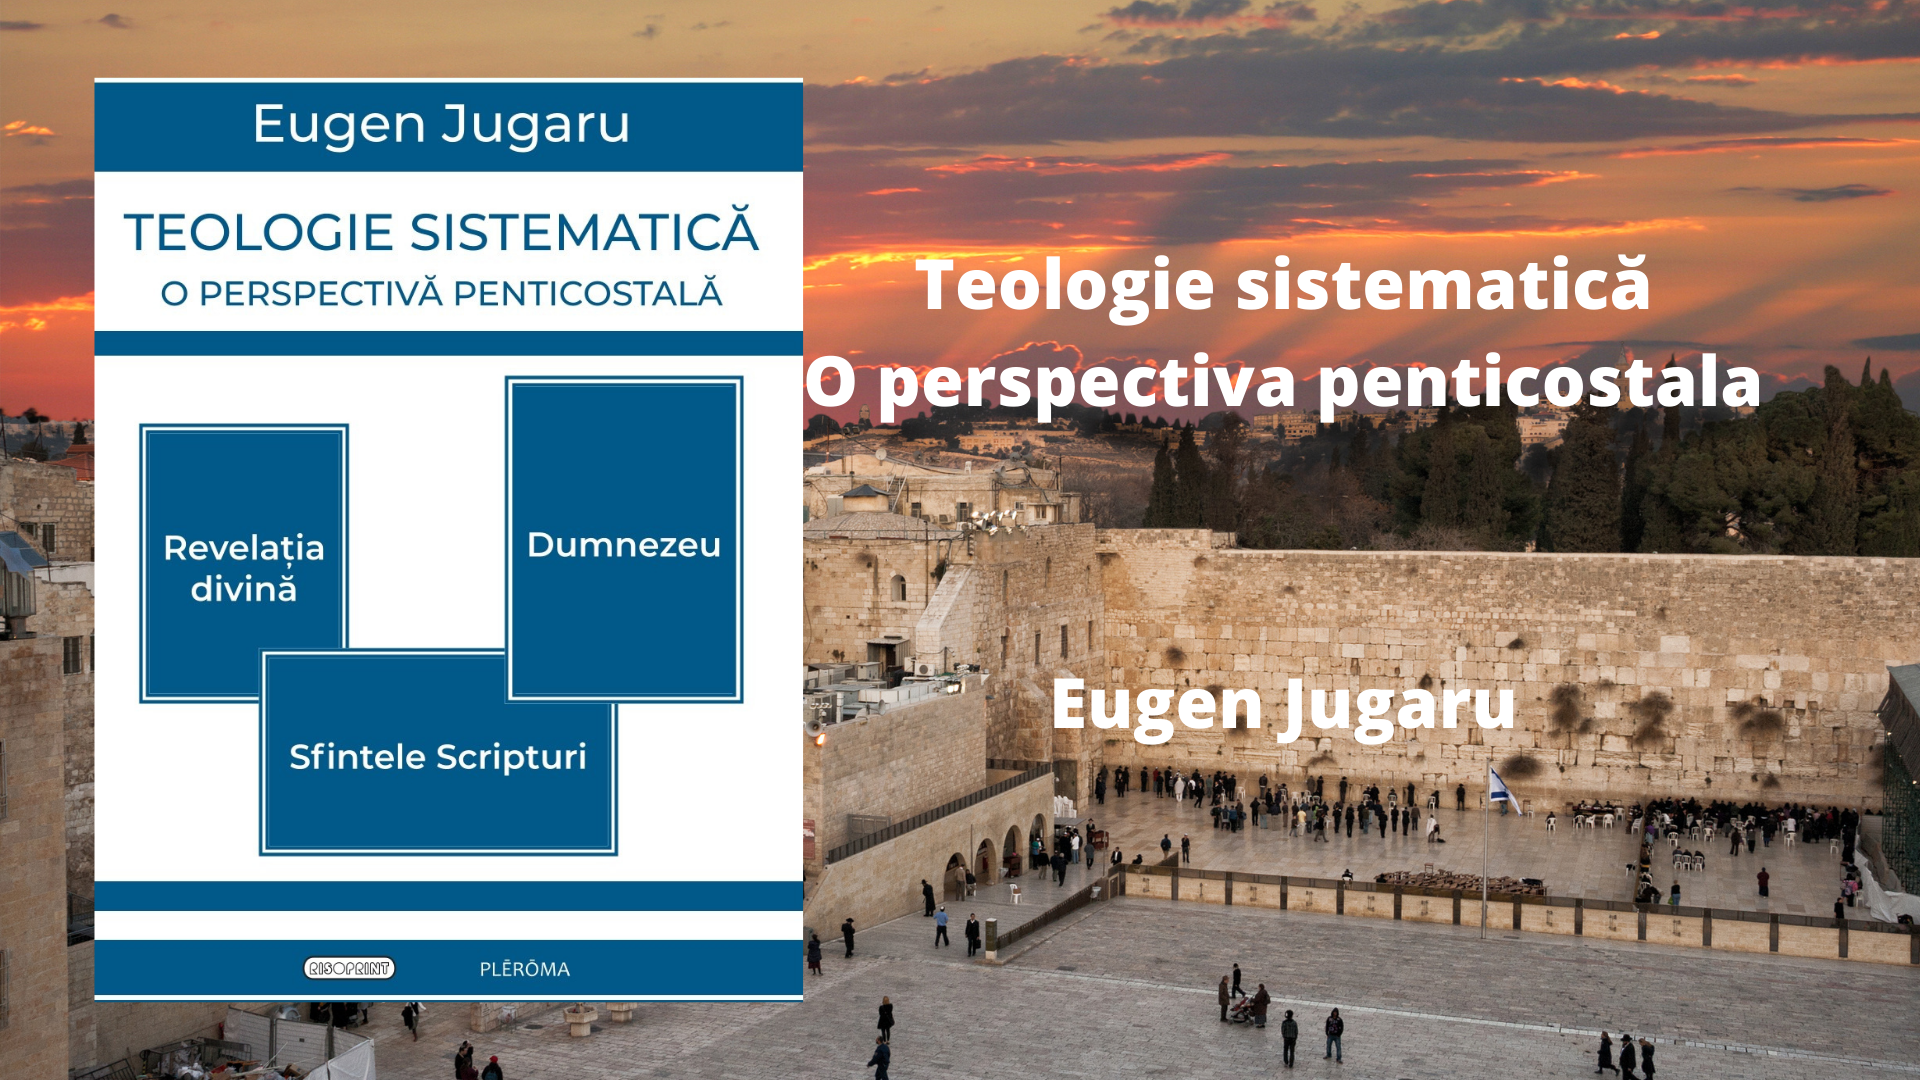 Teologie sistematică O perspectiva penticostala(1)